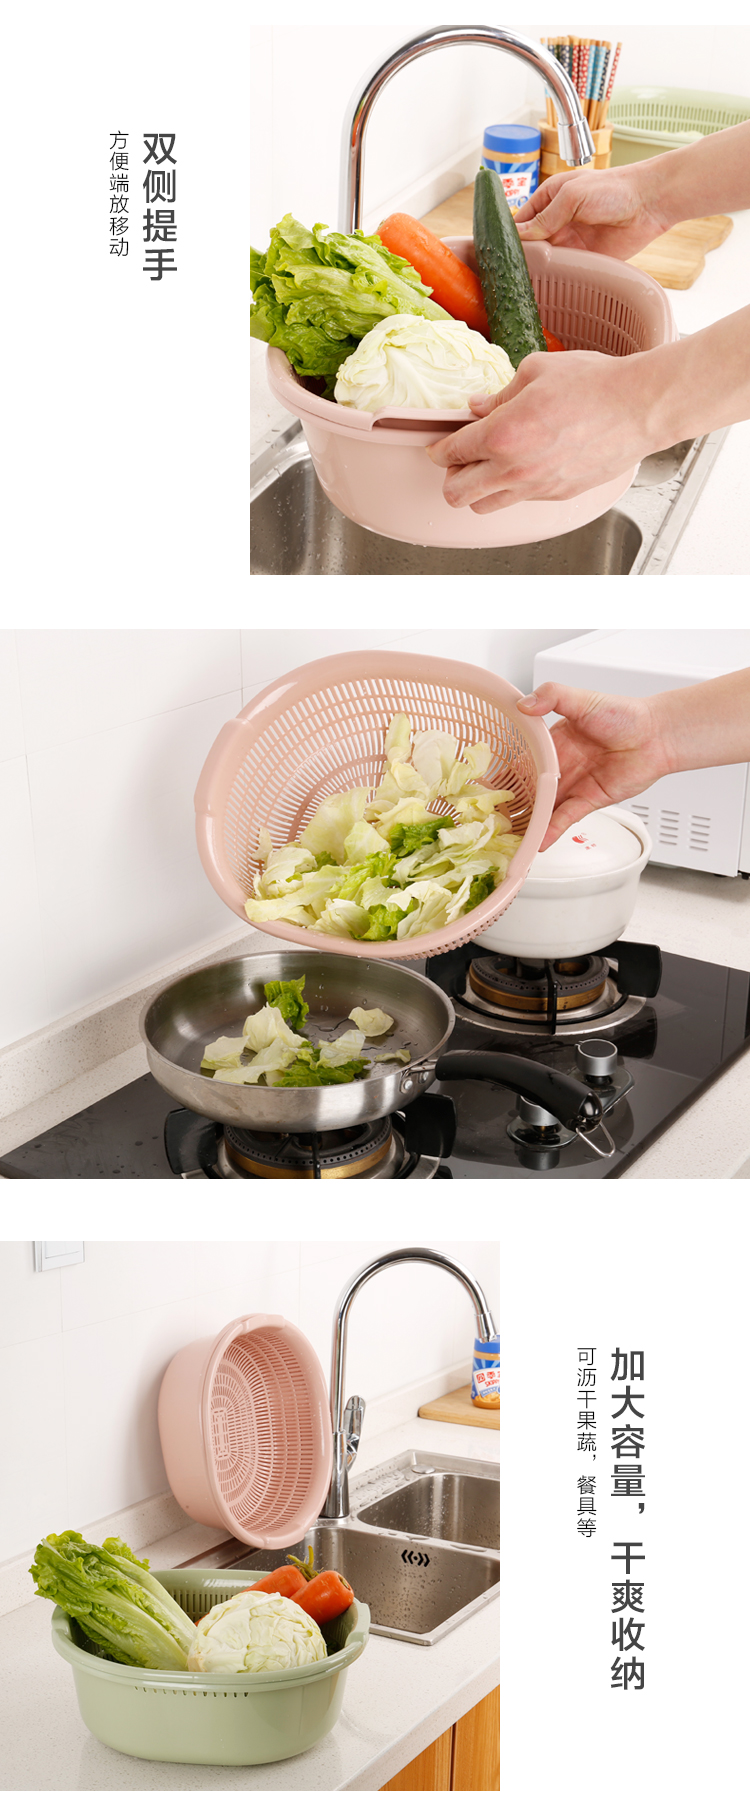 塑料双层洗菜篮沥水篮 厨房篮子家用果盘多功能圆形洗菜盆水果篮